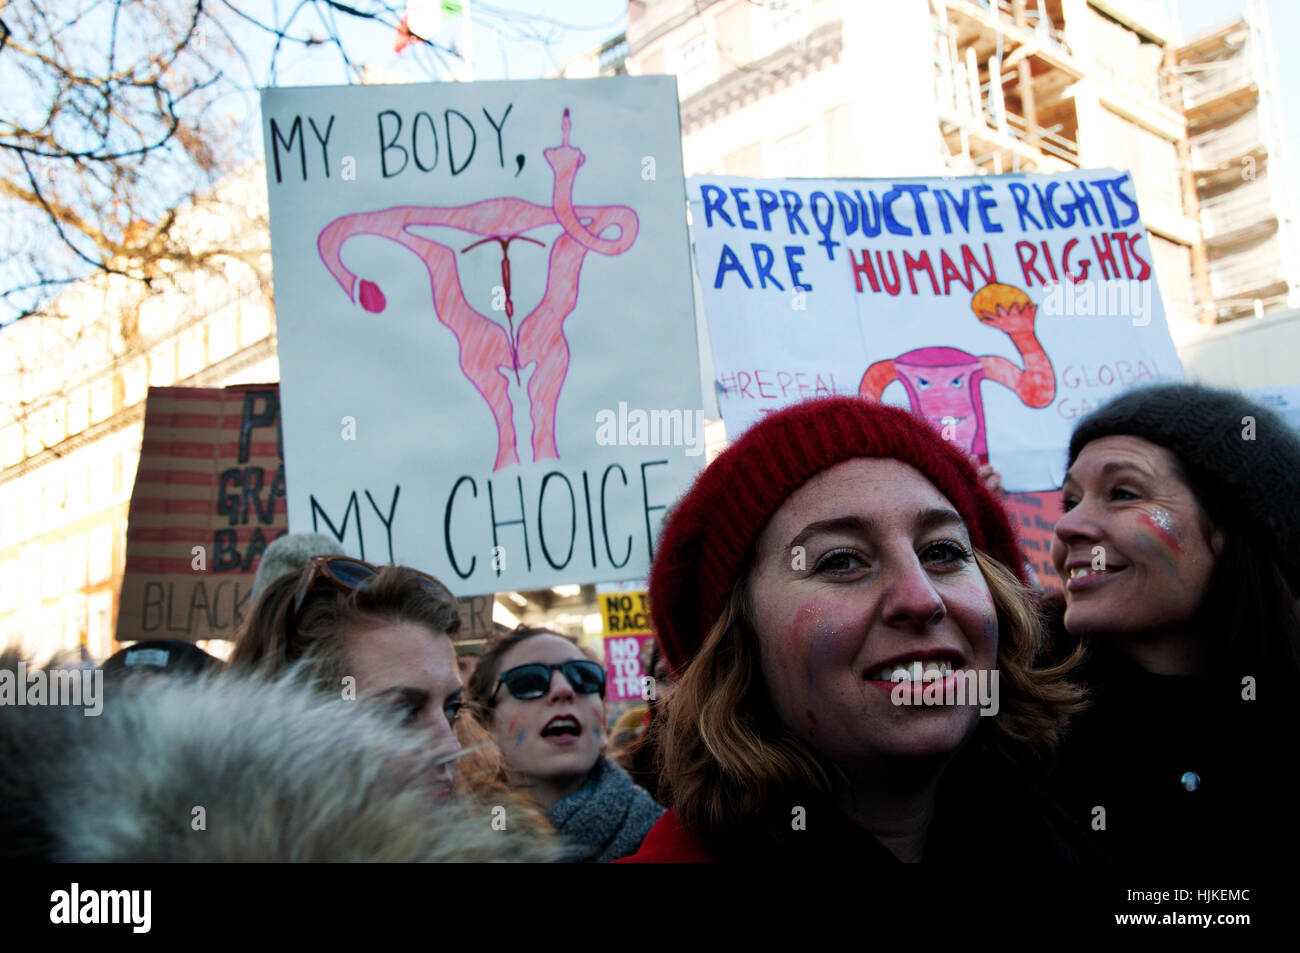 Las mujeres anti-Trump marzo,un cartel con un dibujo de los genitales femeninos dando el dedo y las palabras "mi cuerpo, mi elección". Foto de stock